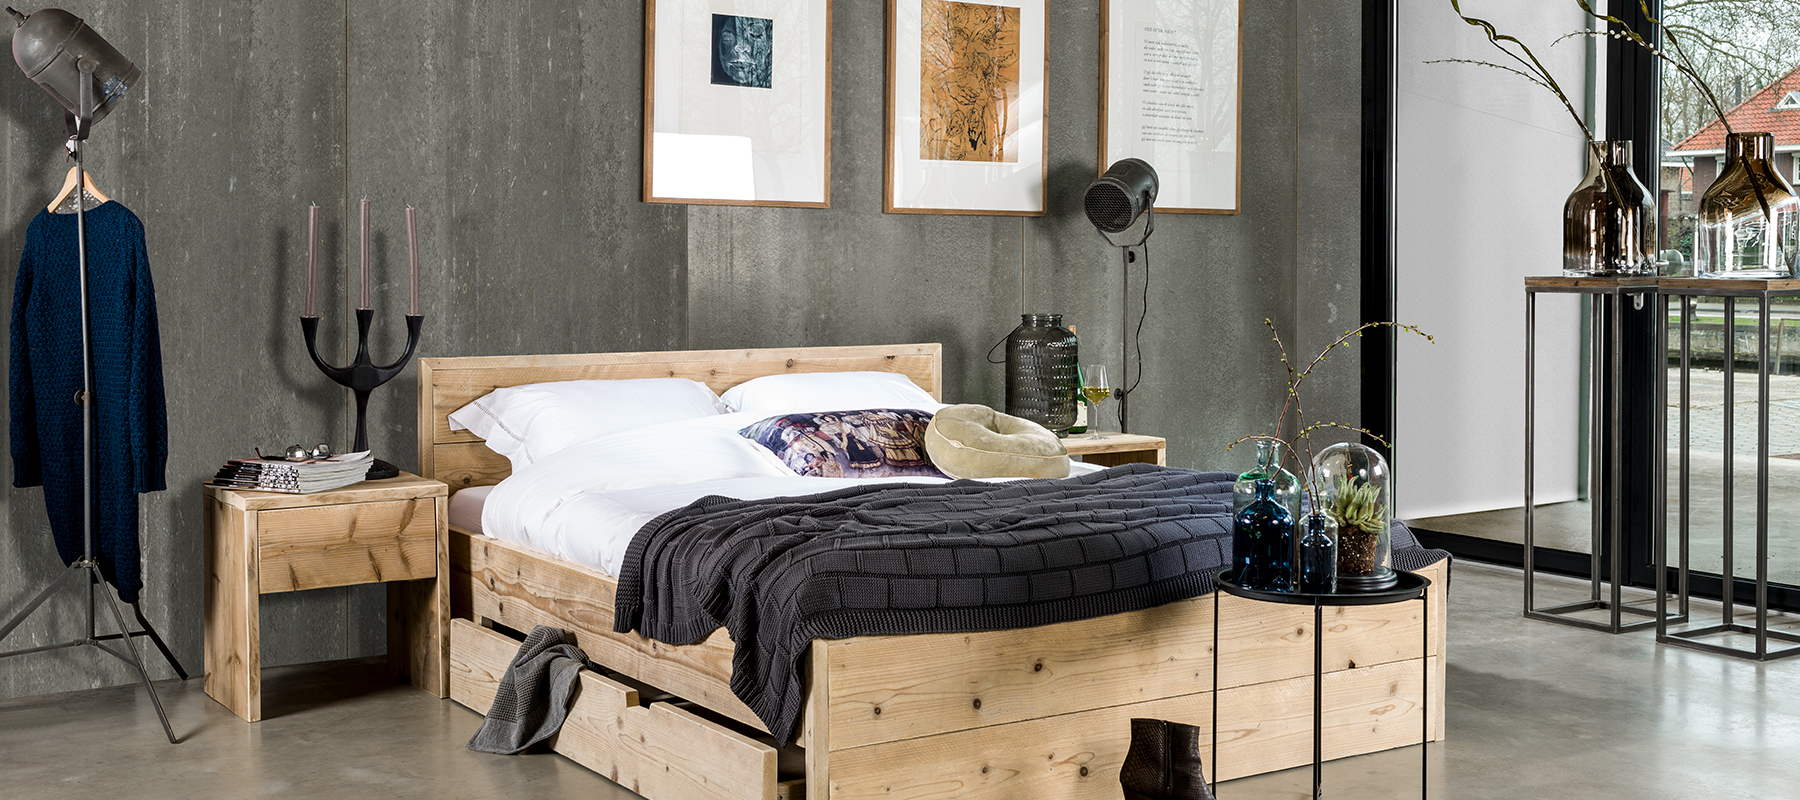 Livengo steigerhout bed met lades lampen voor een grotere slaapkamer